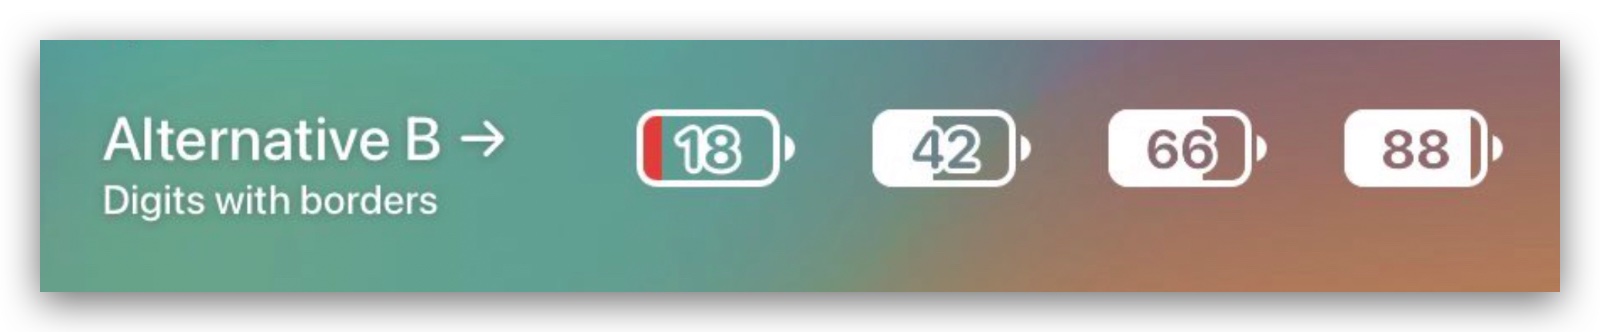 iOS 16 Beta 5 電池百分比 心得